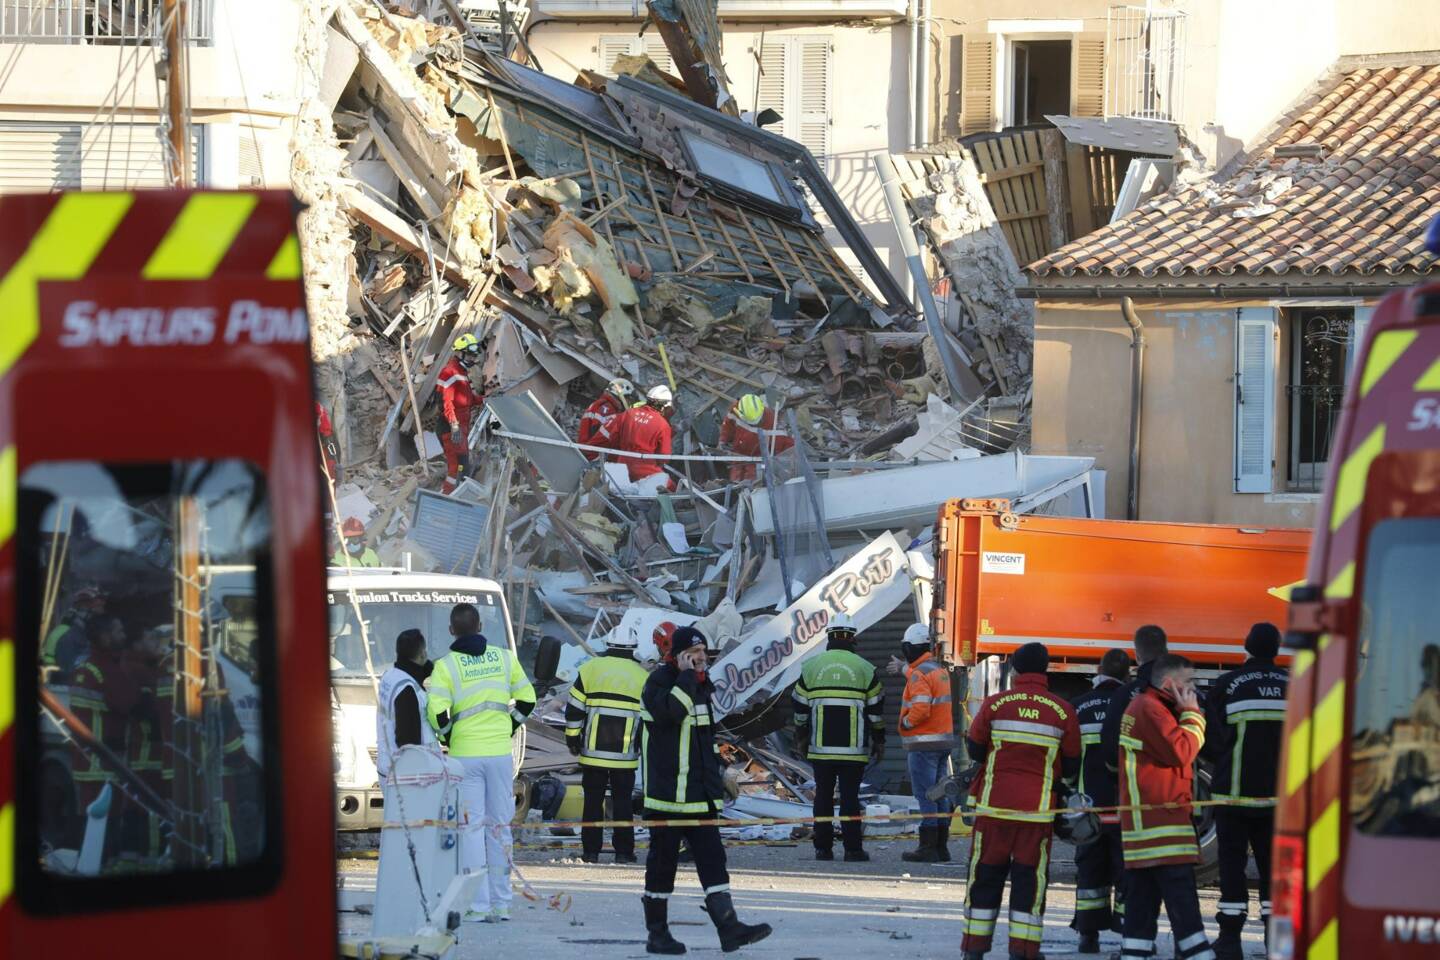 L'immeuble s'est effondré, après une explosion, sur le port de Sanary-sur-Mer, ce mardi 7 décembre vers 3h50. 